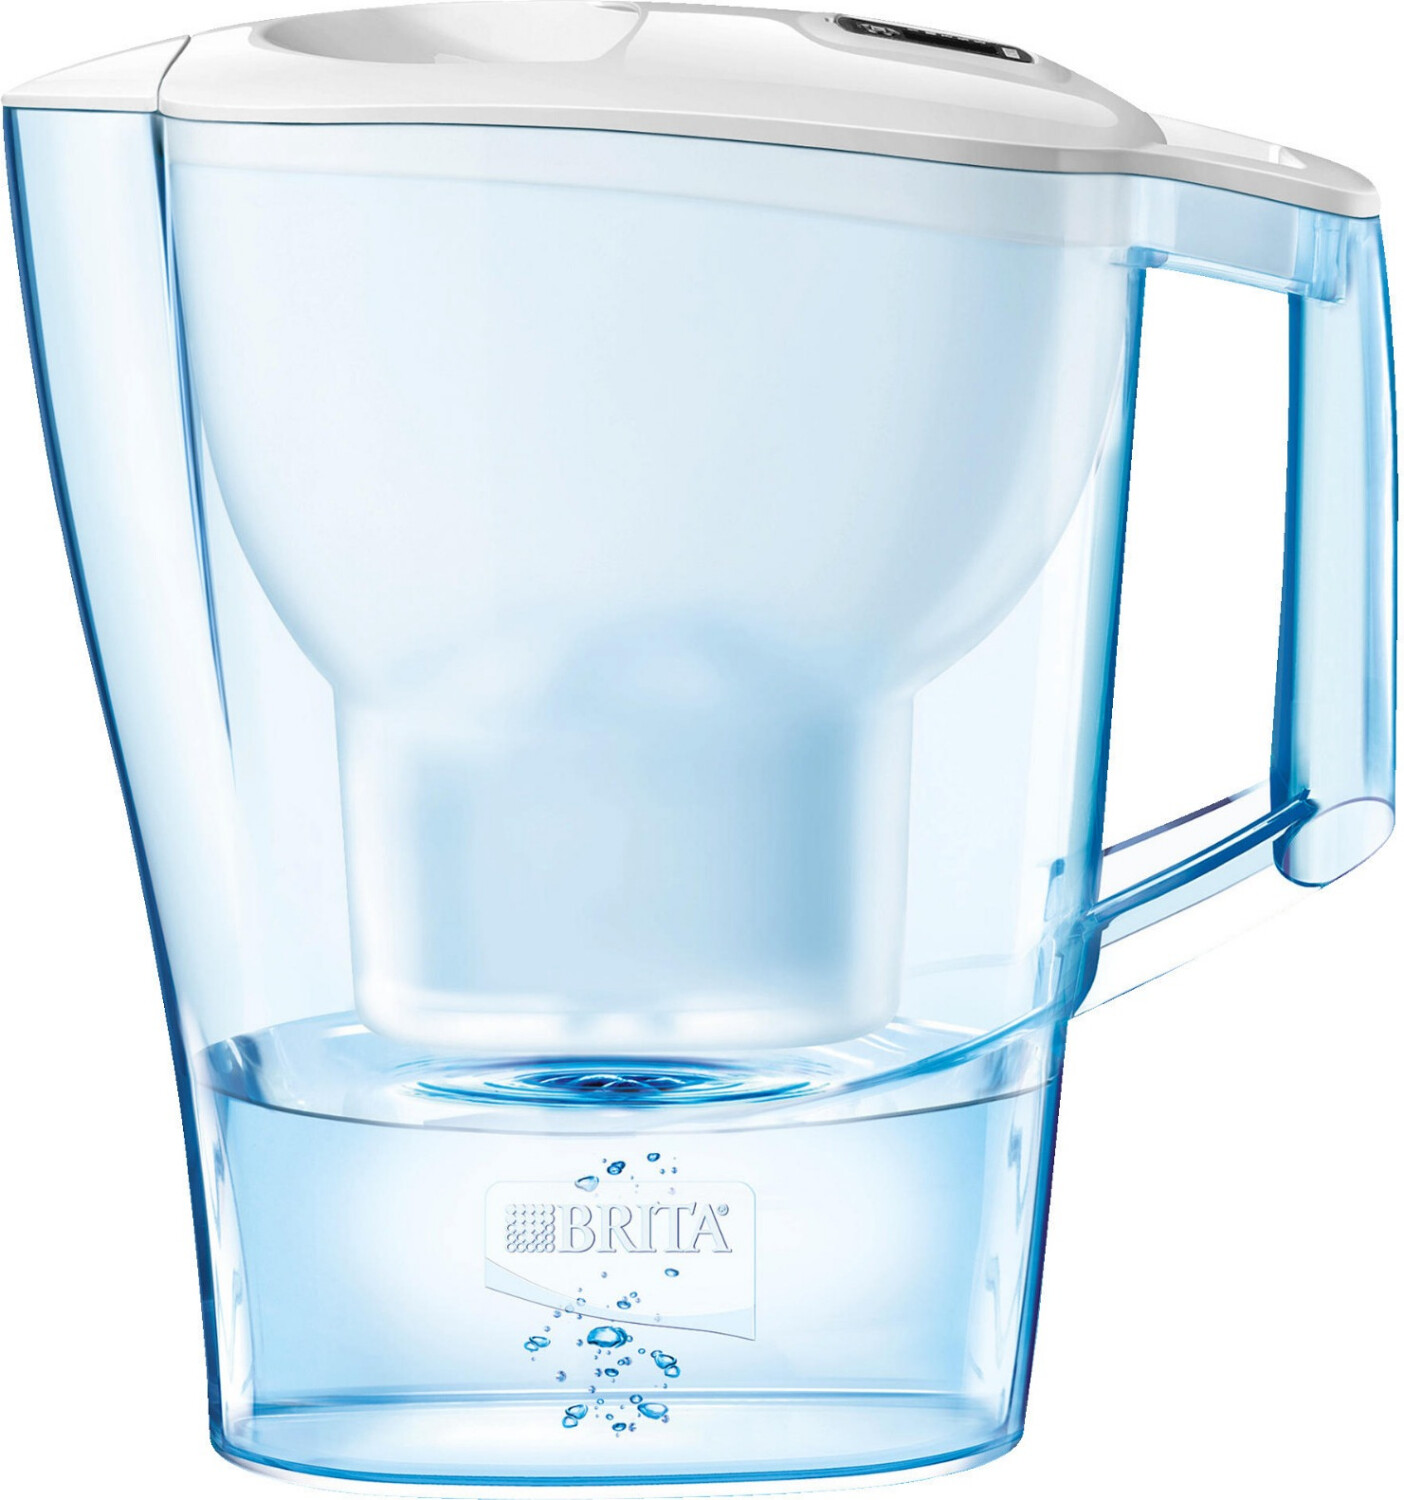 Carafe filtrante bleu 2,4L dont 1,4L d'eau filtrée avec une 1